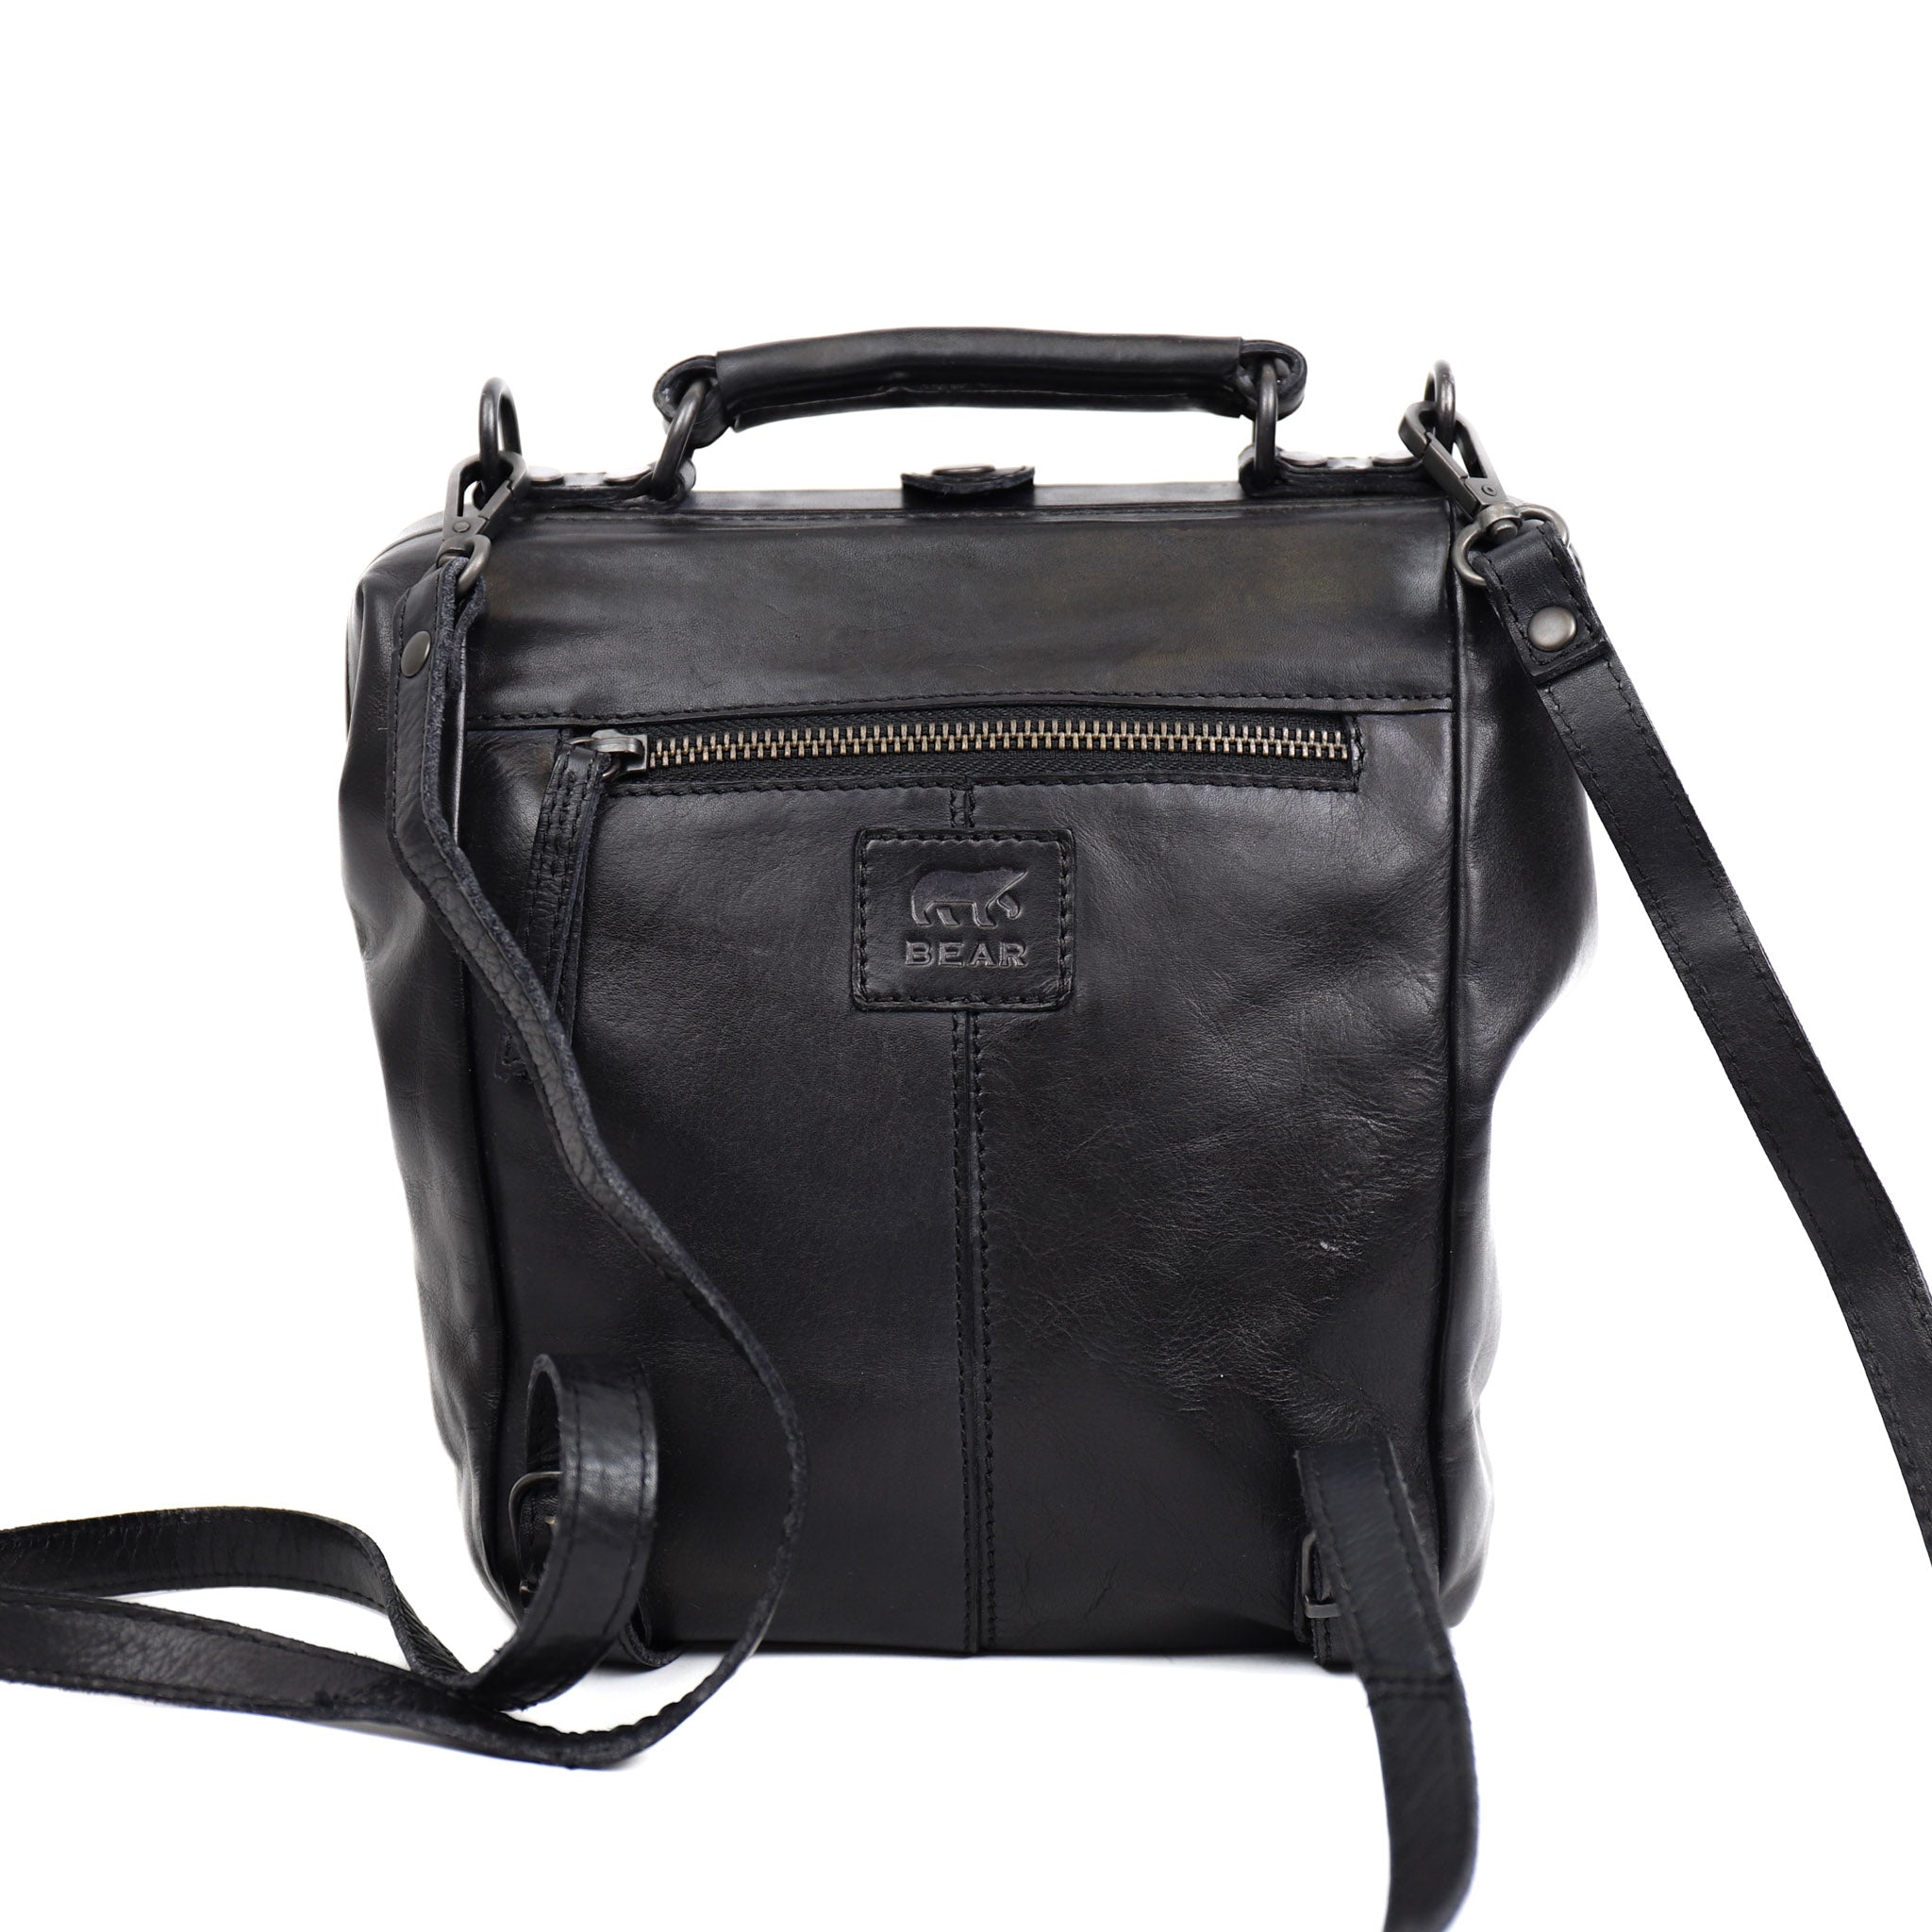 Doctor's bag/backpack 'Shelly' black